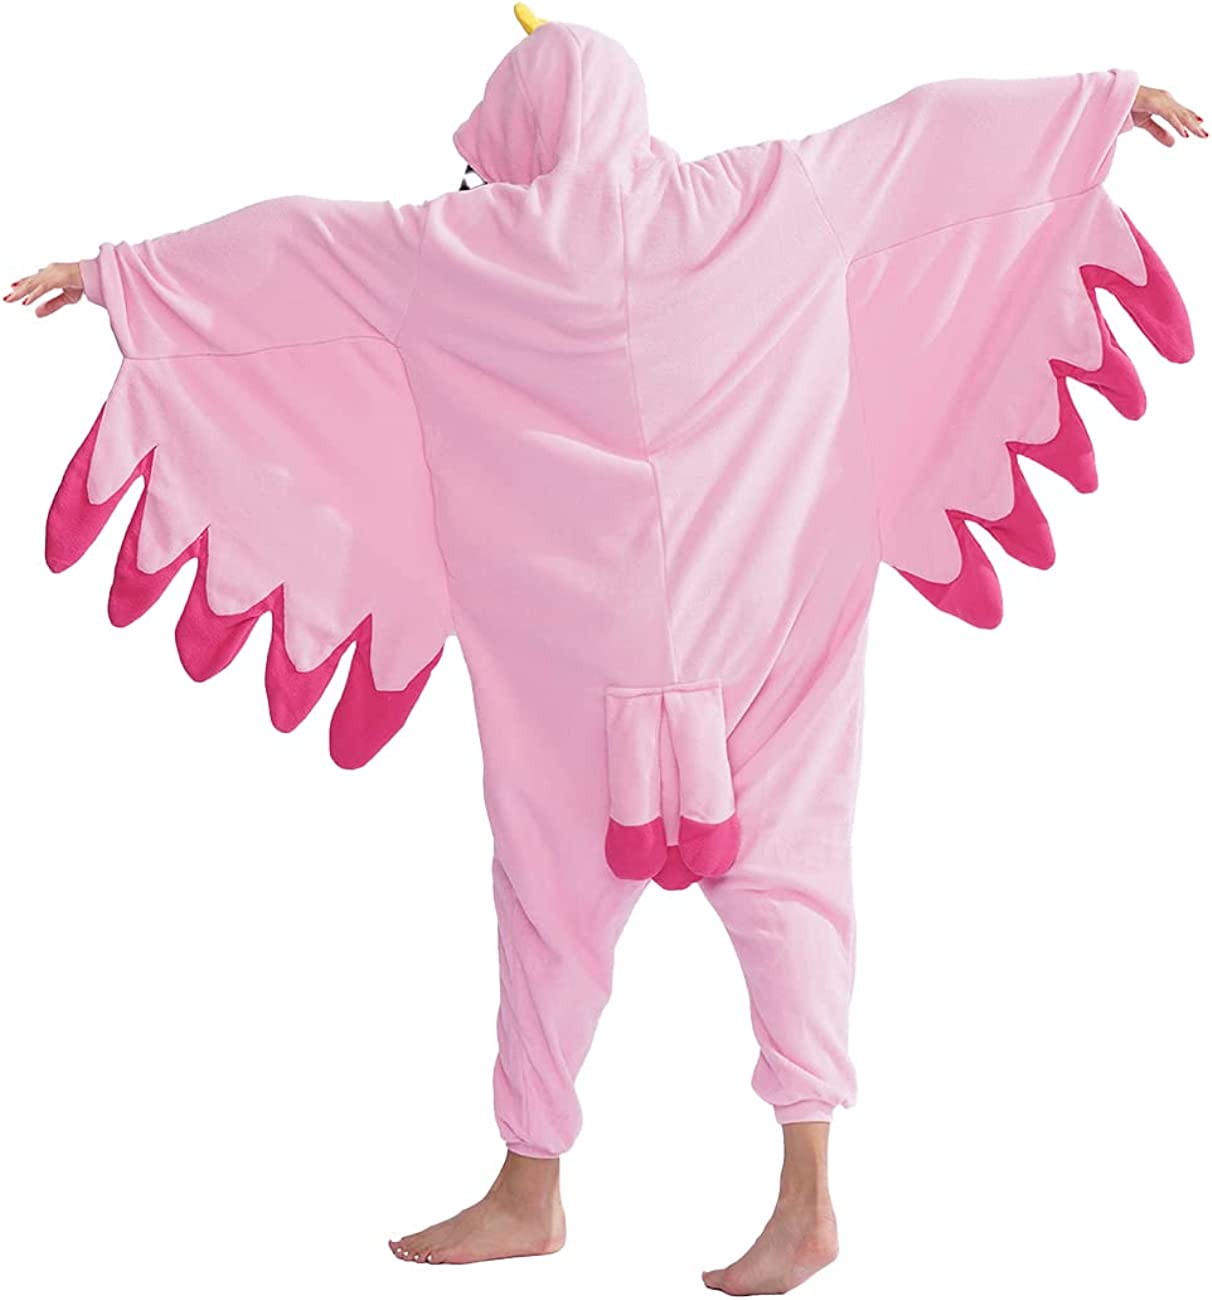 Bird Onesie Pajamas Animal Cosplay Costume Sleepwear